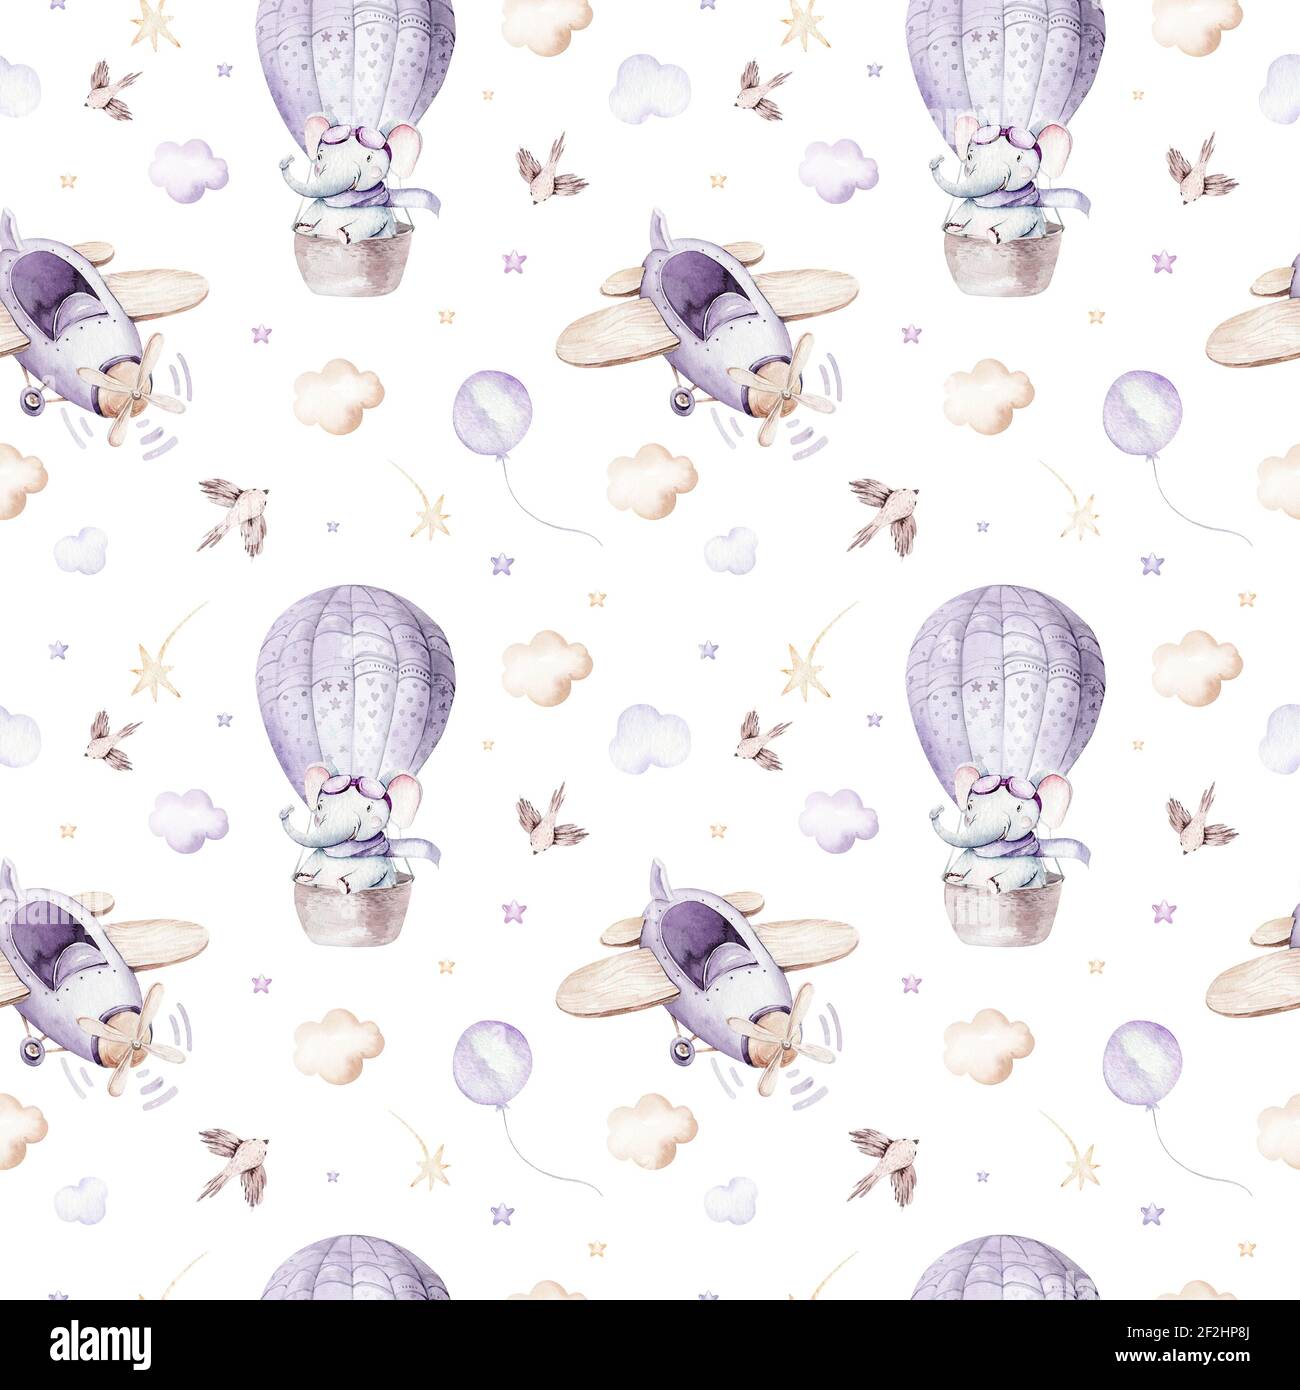 Aquarelle violet illustration d'une scène de ciel mignon et fantaisie avec  des avions et des ballons, des nuages. Motif bébé garçon et fille. Douche  bébé, nur Photo Stock - Alamy